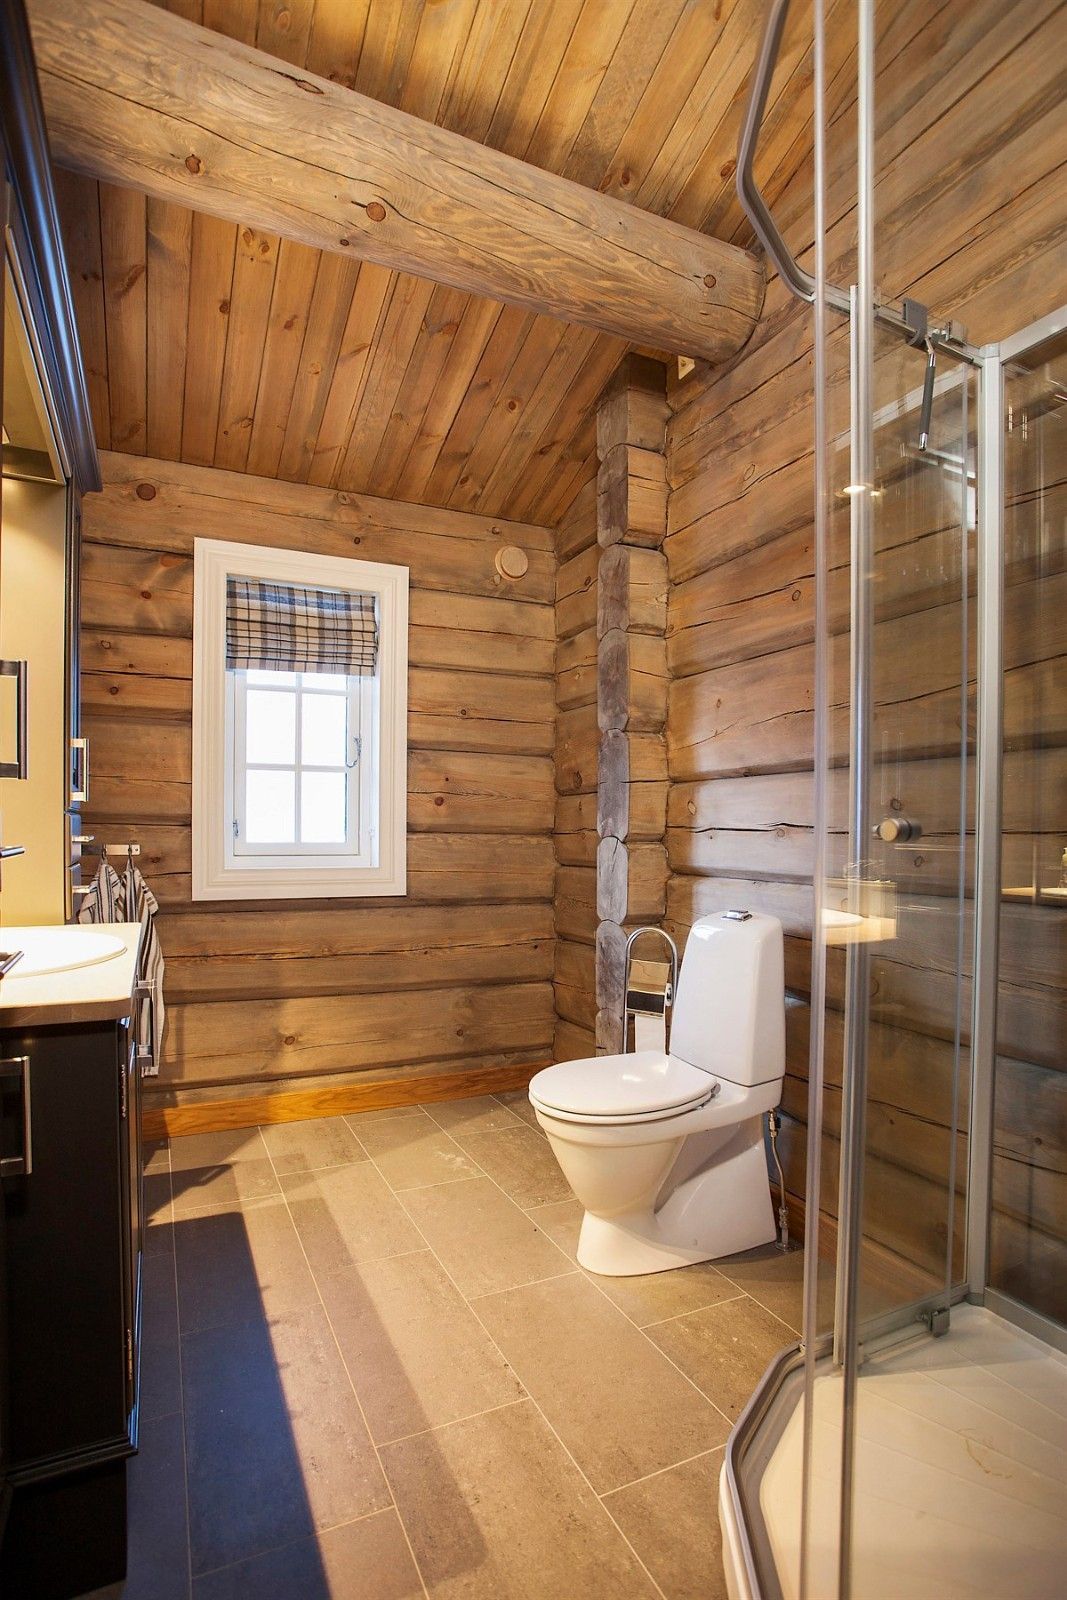 Ванная в деревянном доме: 200+ (фото) отделка, обустройство